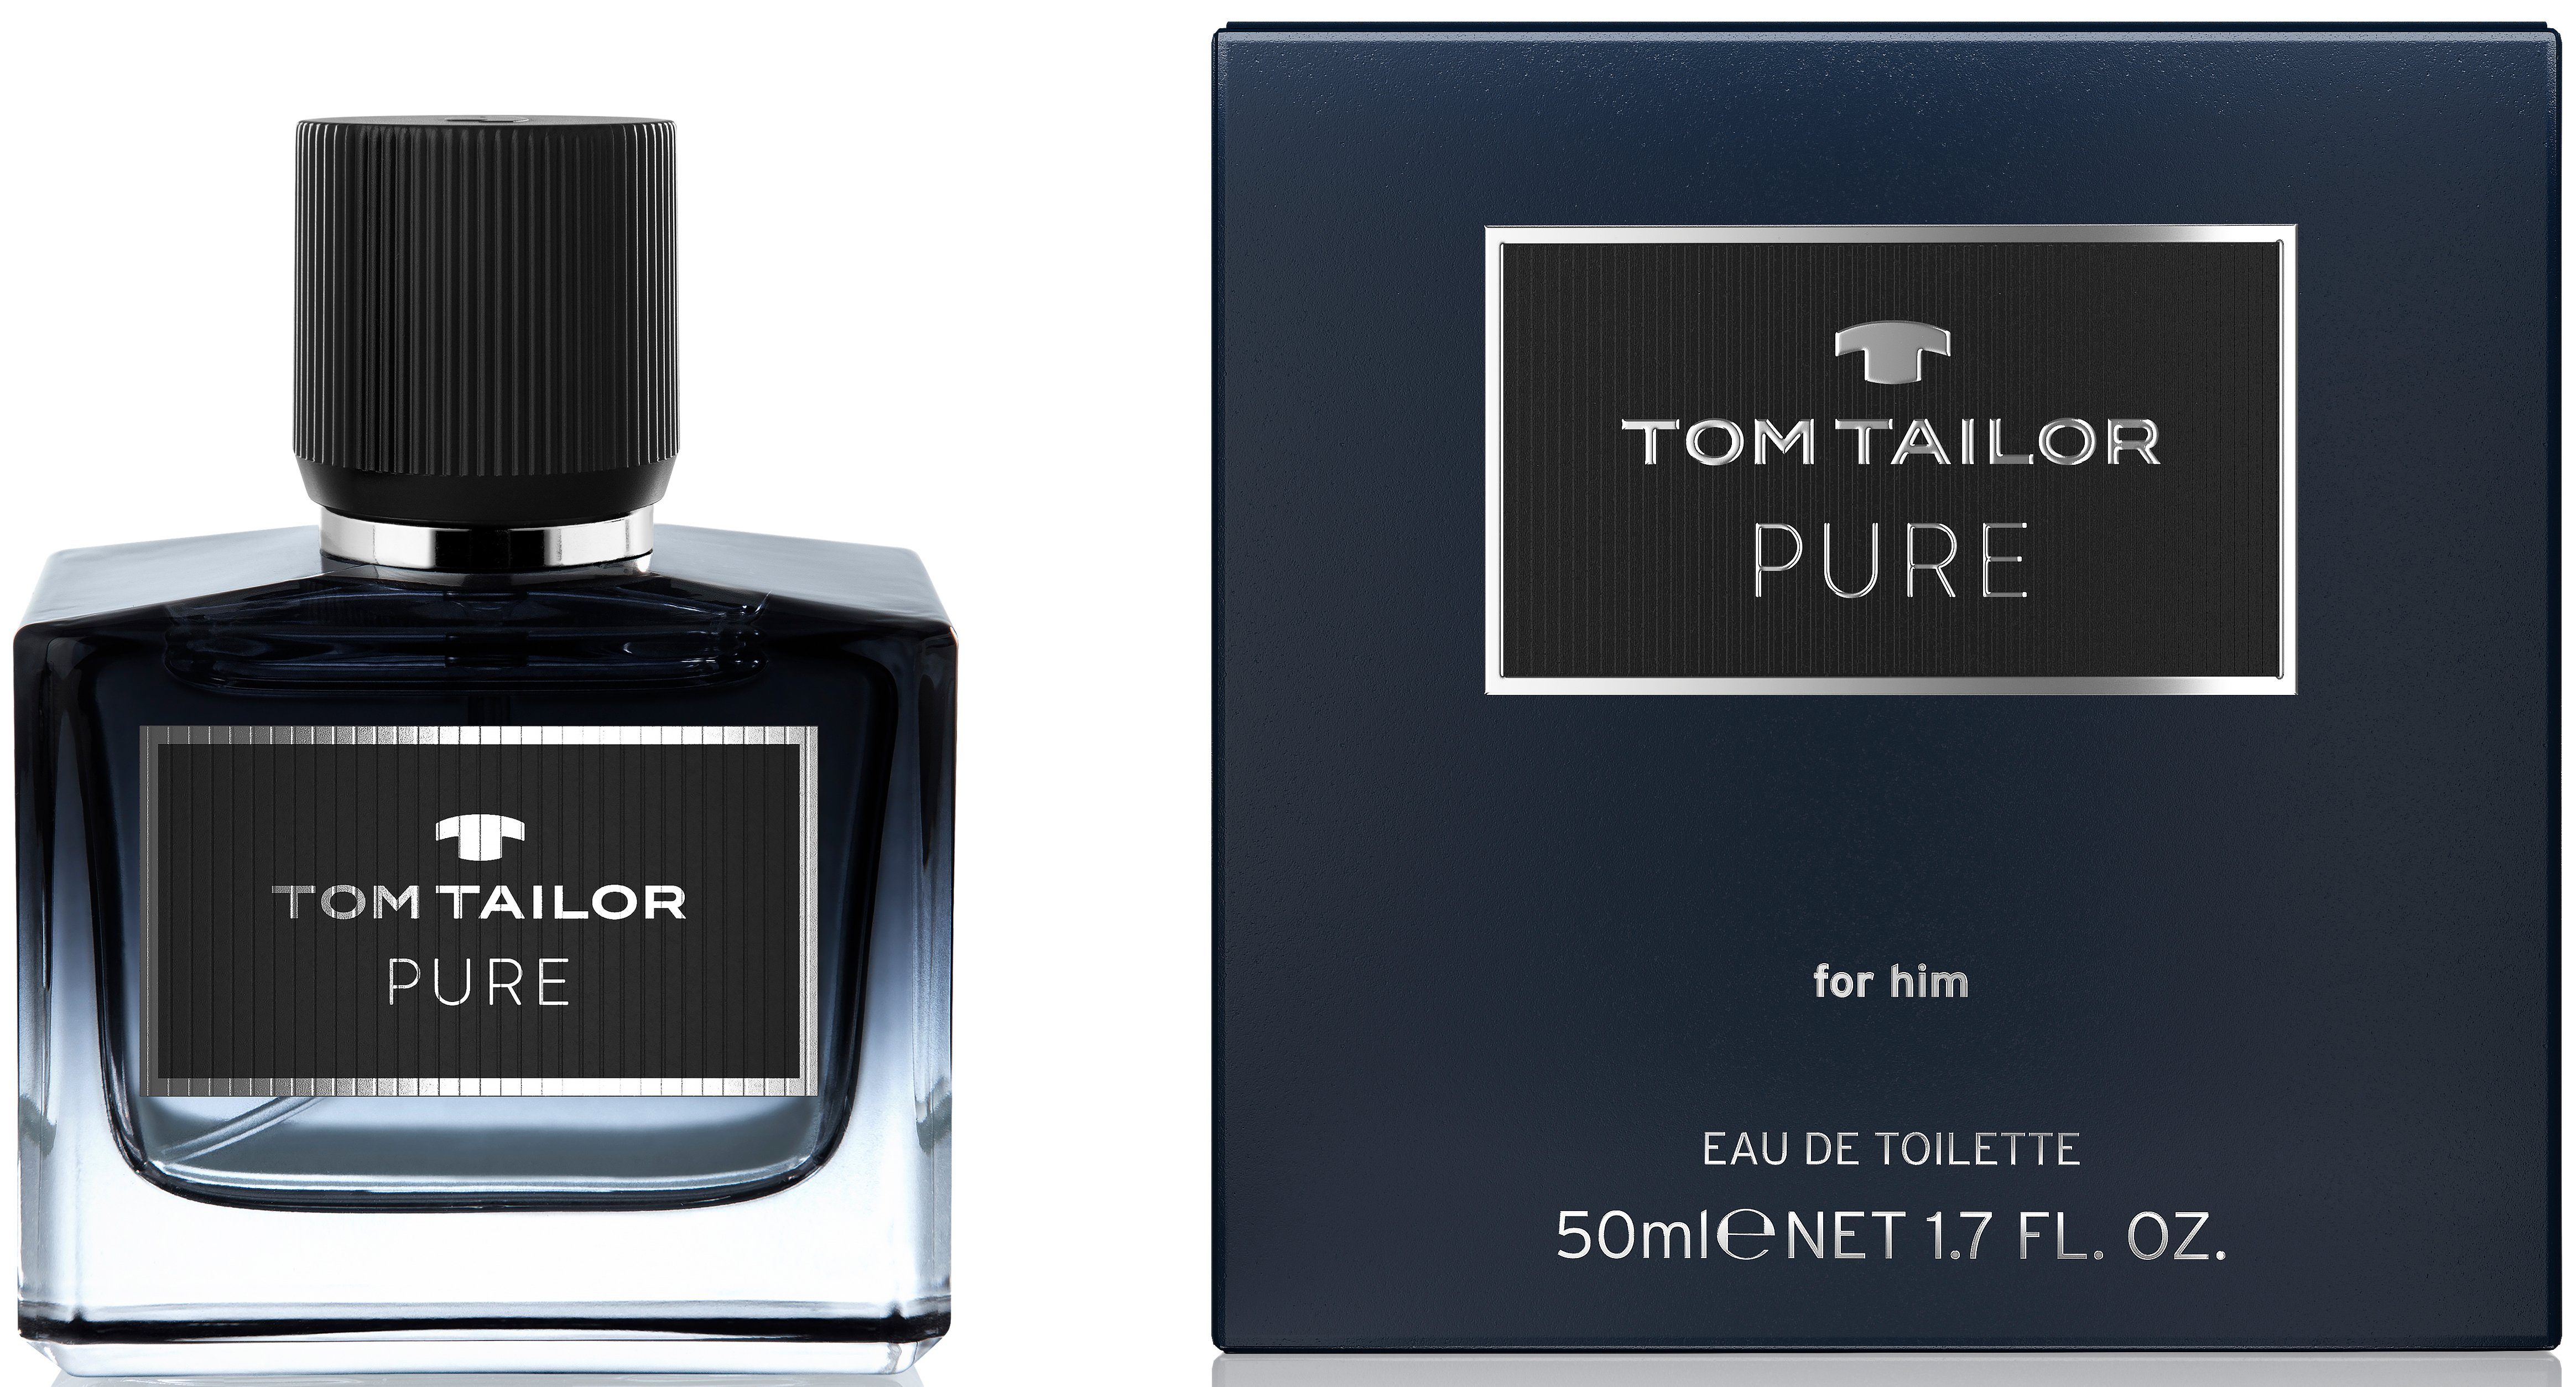 TOM TAILOR Eau de Toilette him for Pure